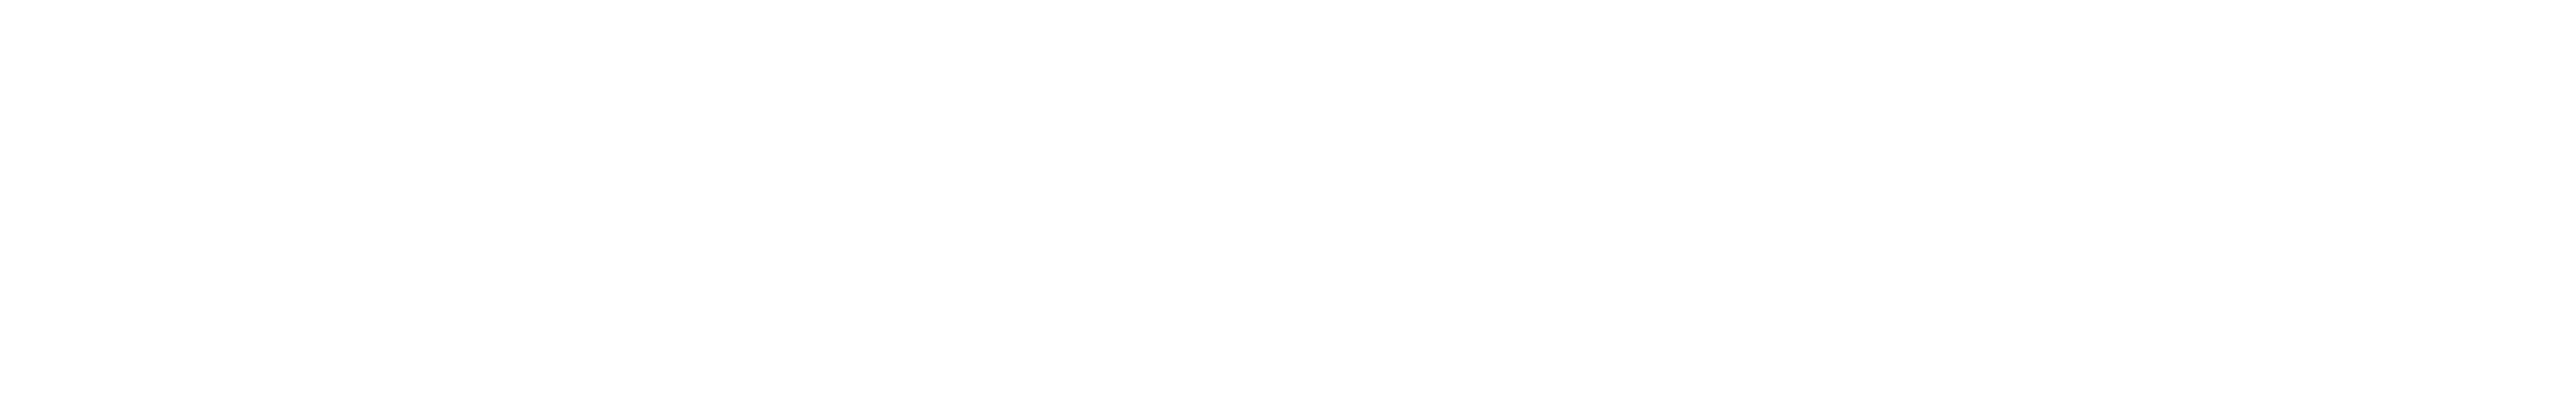 logo-hort-innovation